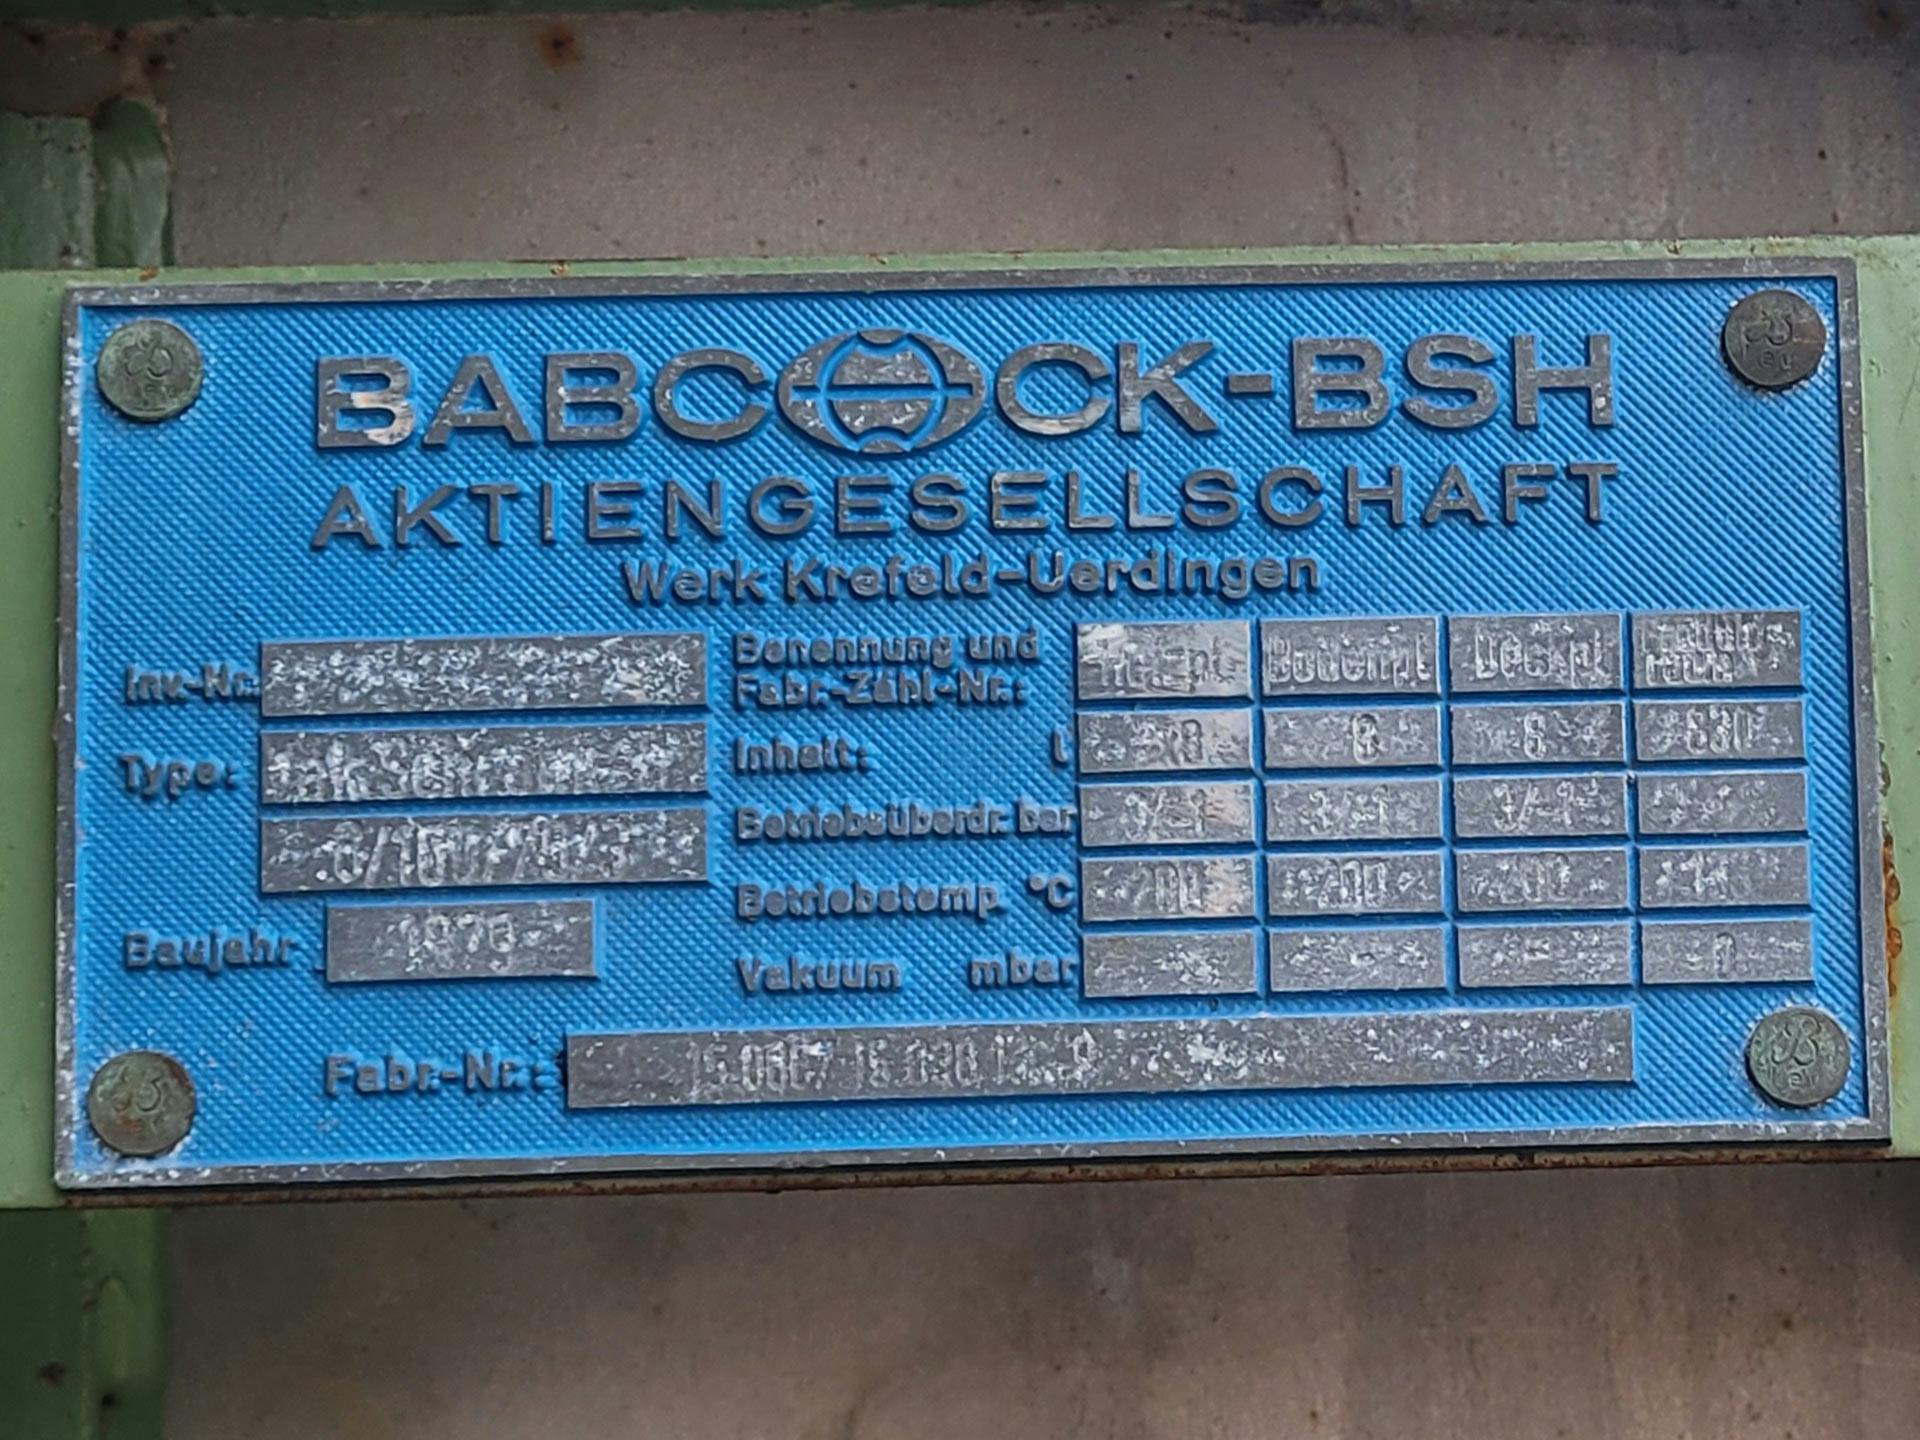 Babcock-BSH 8/100/75/3 - Tácová sušicka - image 4